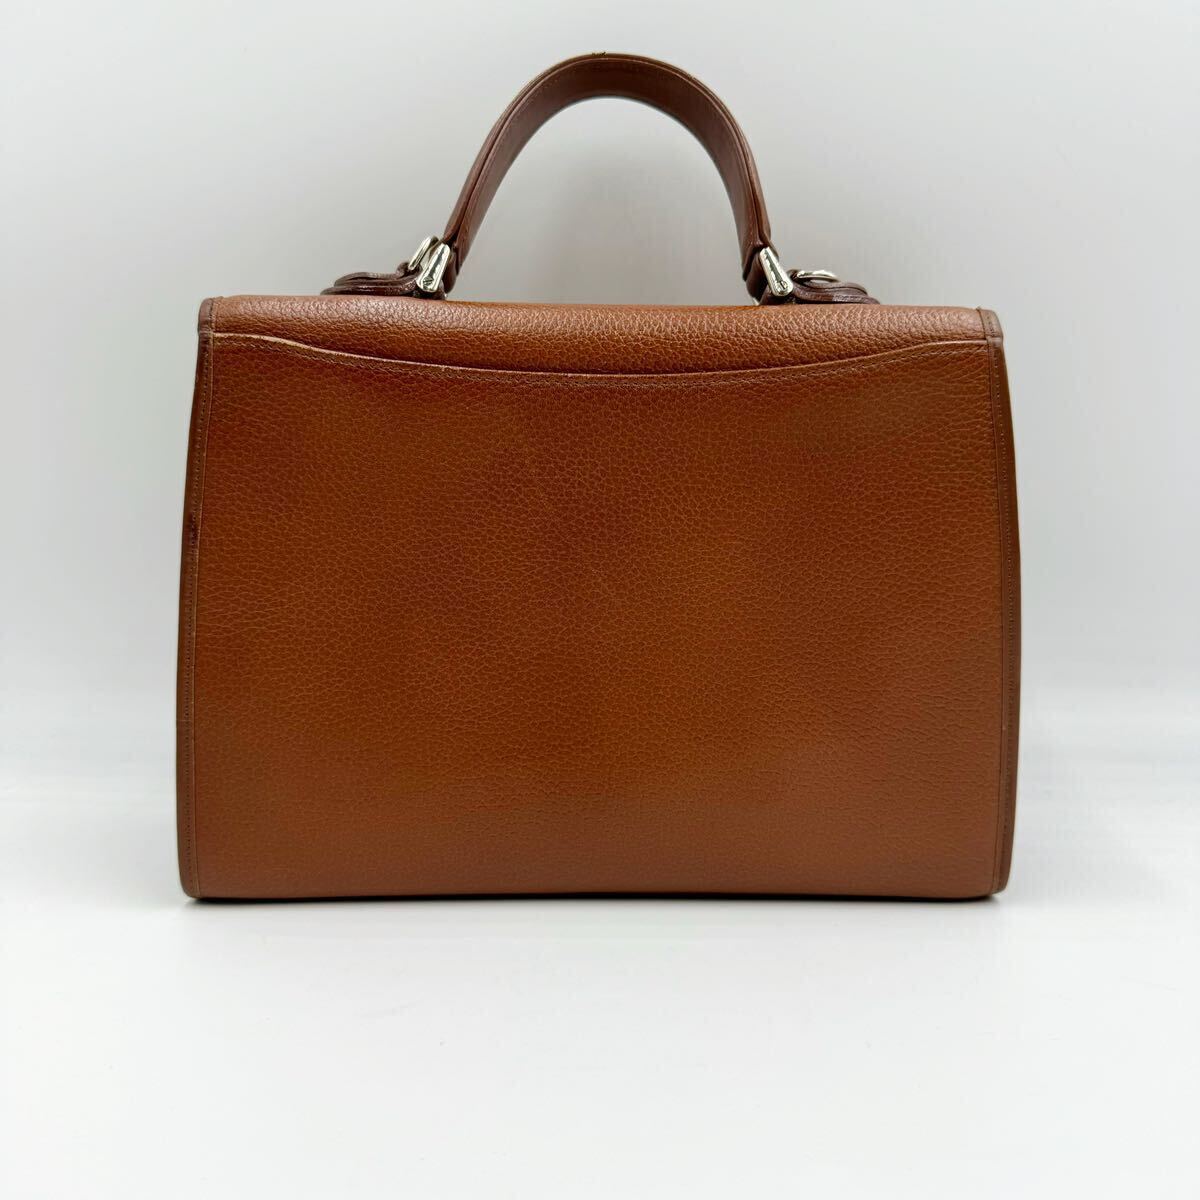 1 иен [ прекрасный товар ] Burberry Burberry сумка на плечо ручная сумочка noba проверка тень шланг 2way кожа Brown 